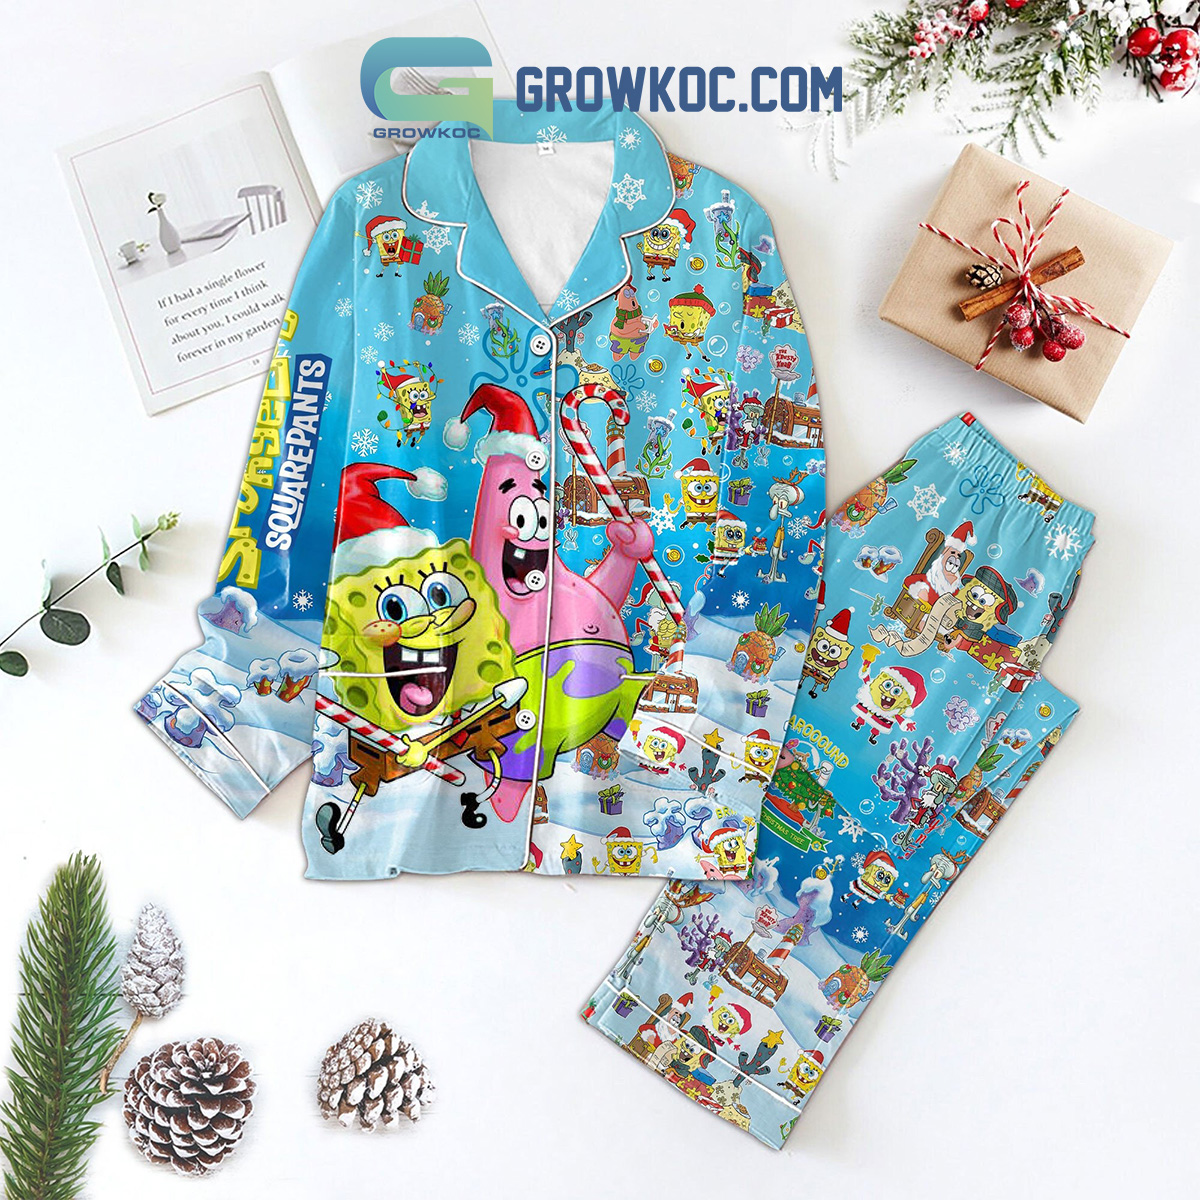 Spongebob Squarepants Bring It Around The Christmas Tree Pajamas Set